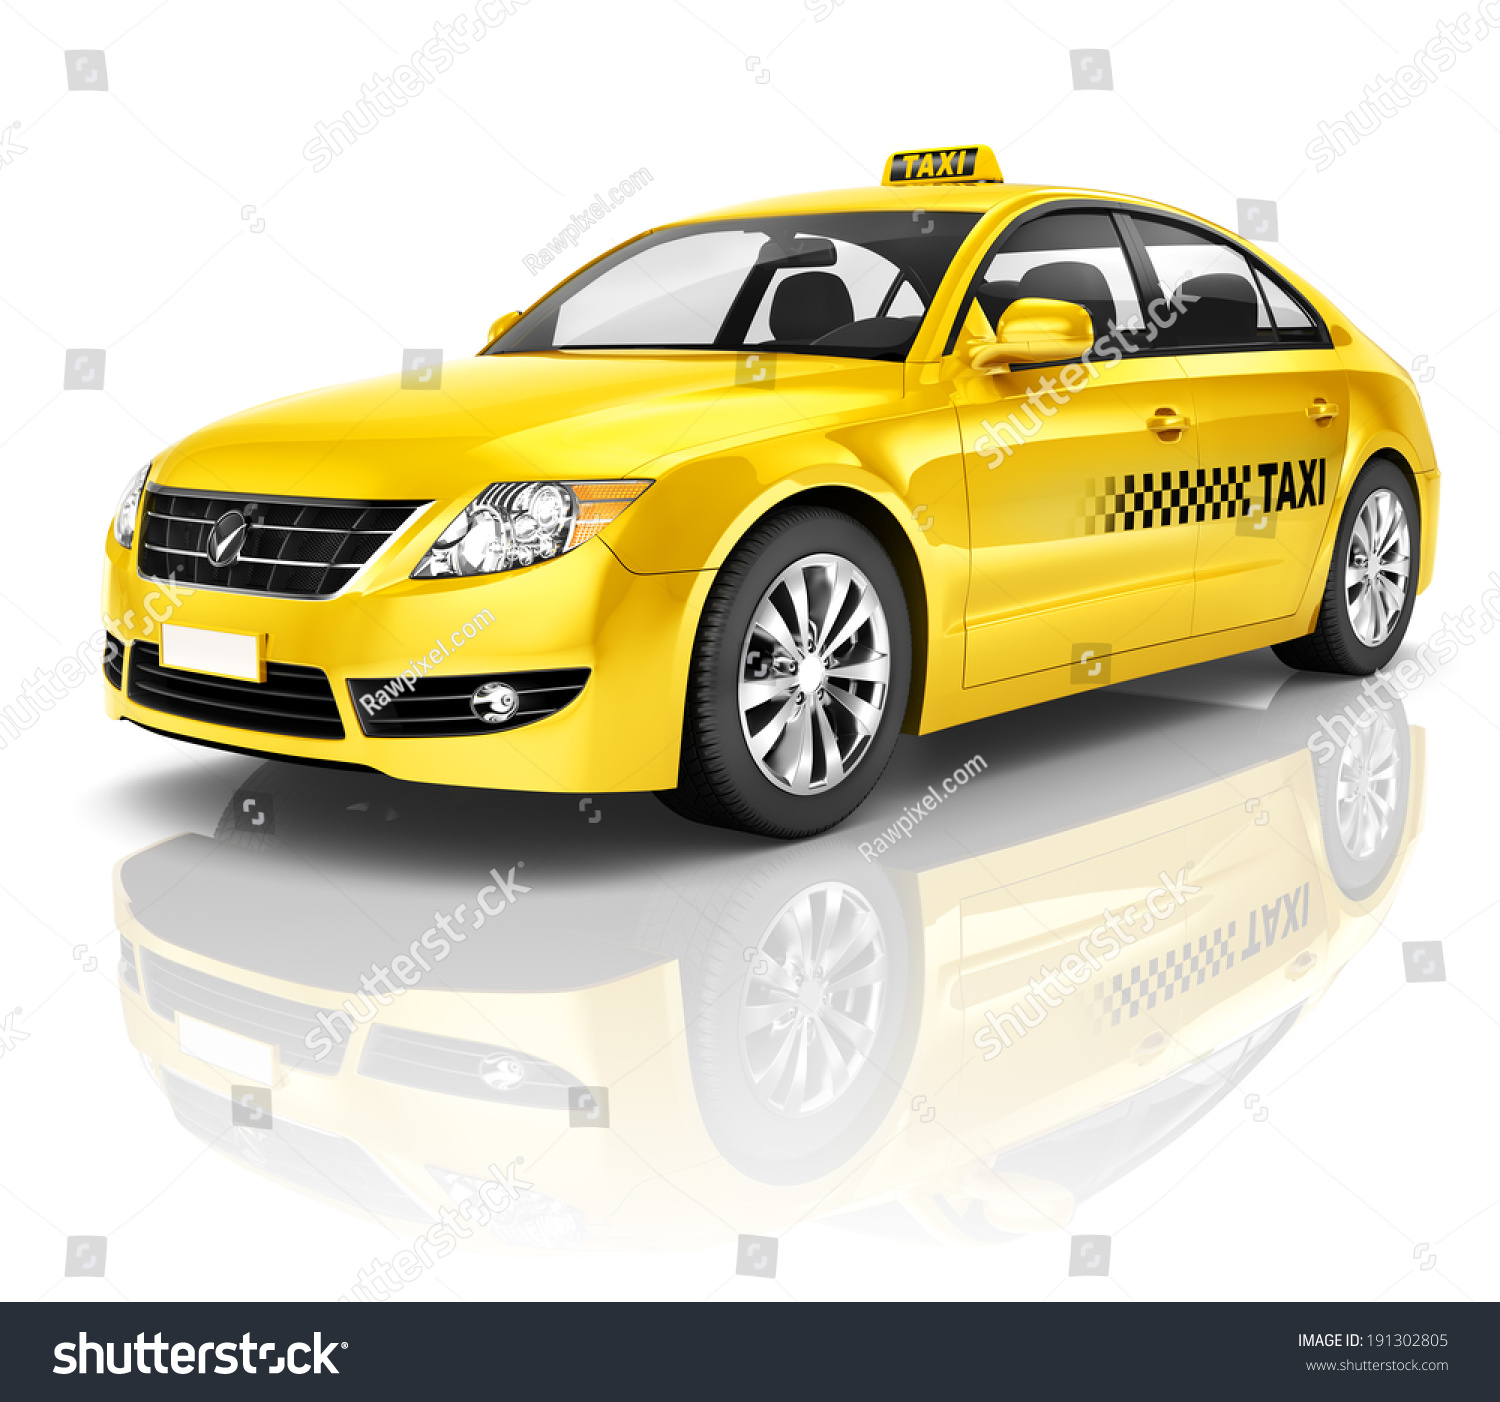 黄色出租车图片大全-黄色出租车高清图片下载-觅知网